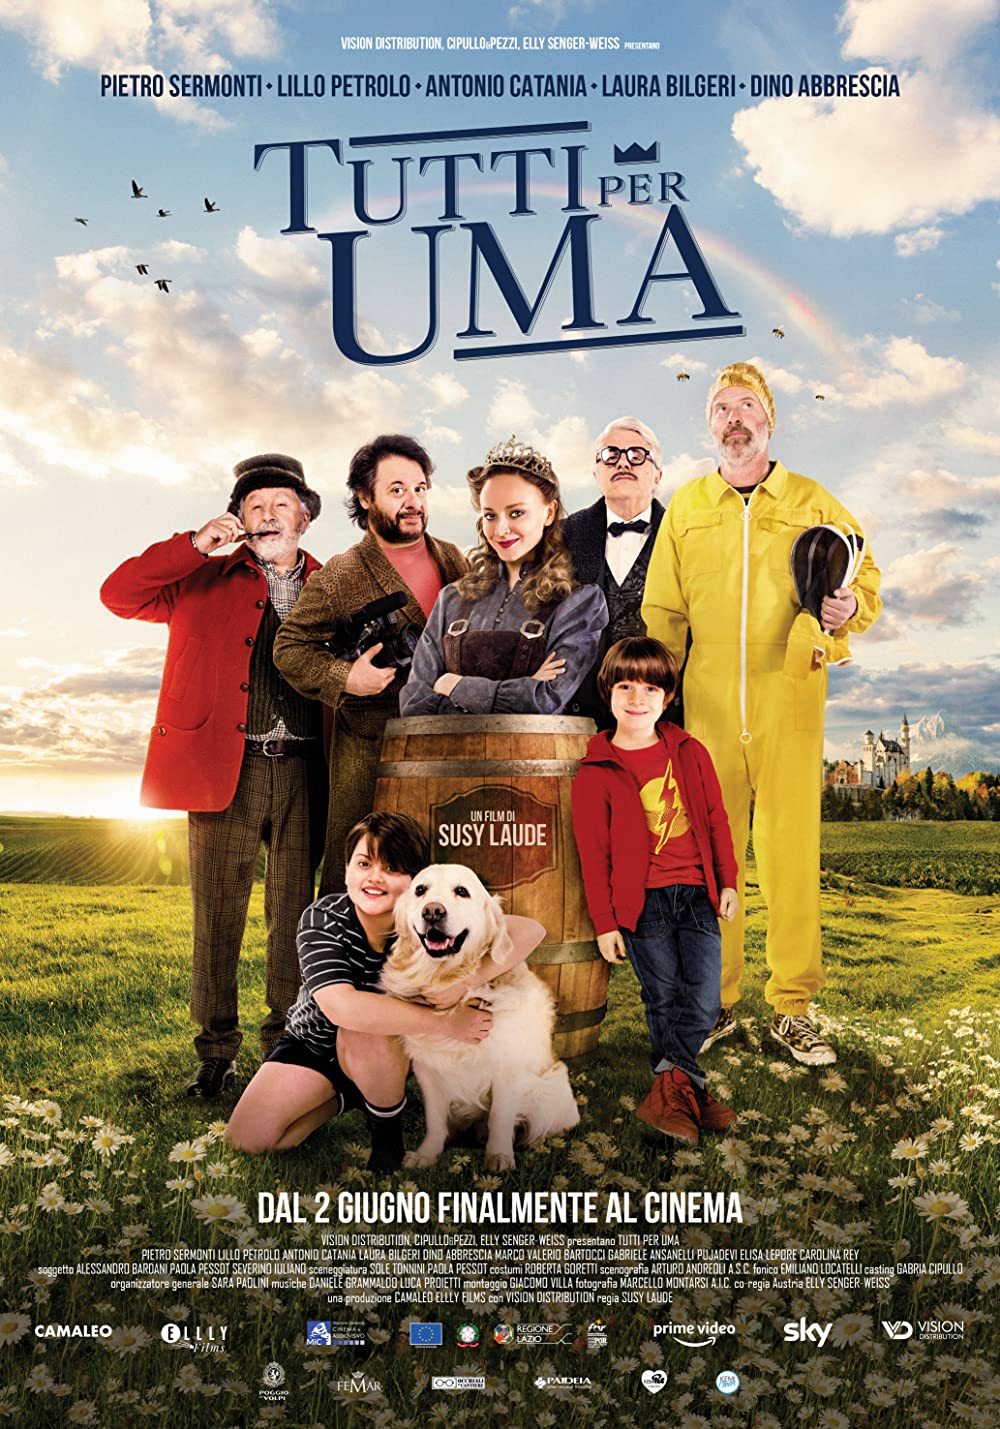 Filmbeschreibung zu Alle für Uma